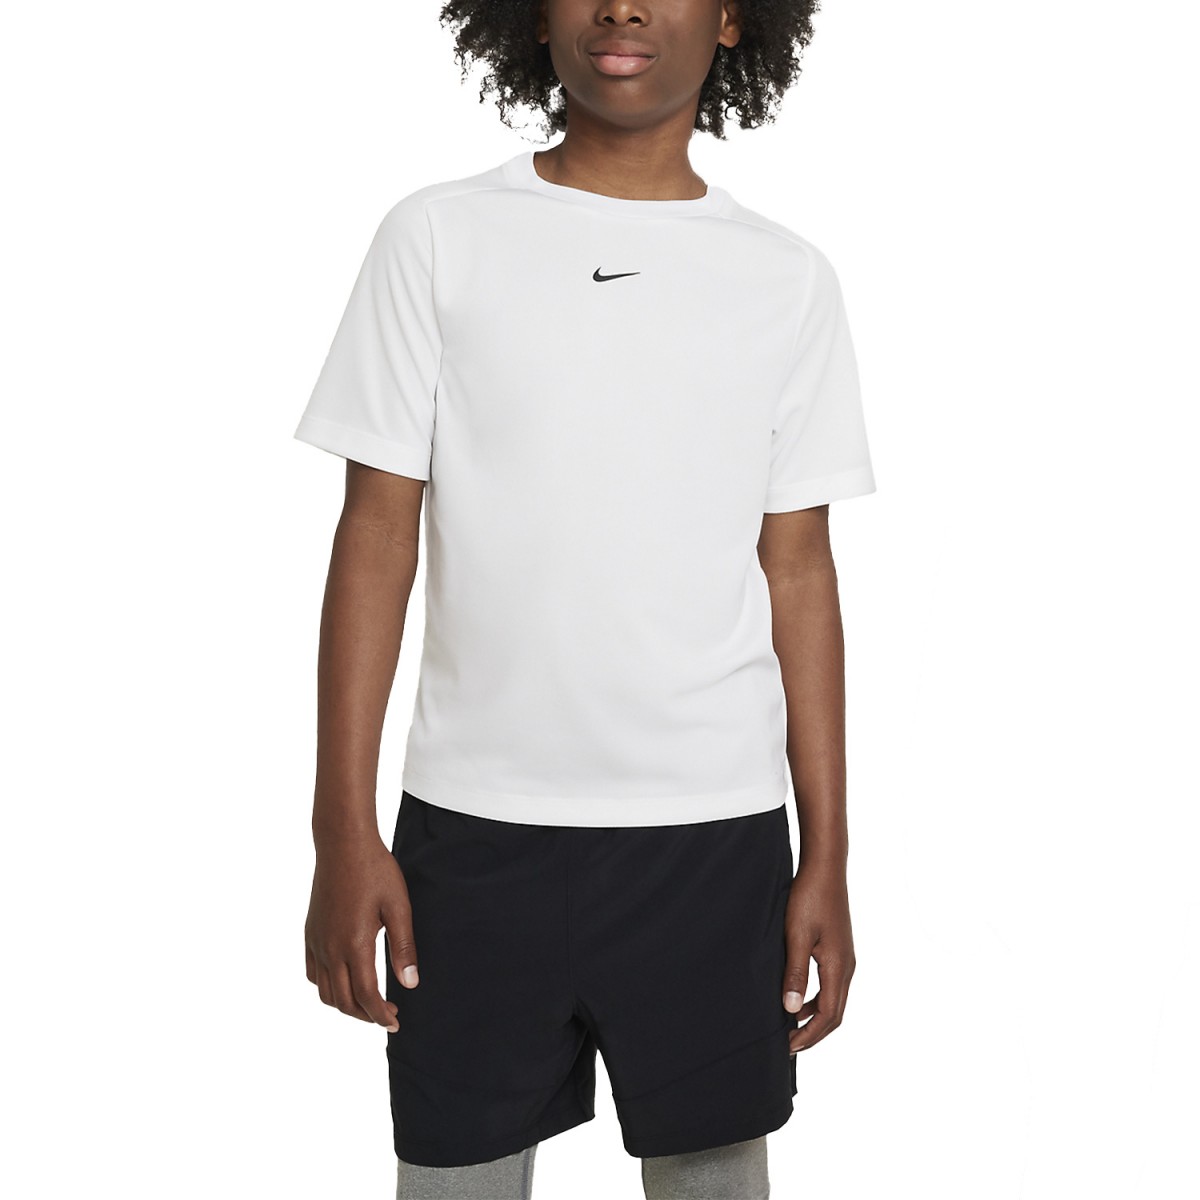 Теннисная футболка детская Nike Multi T-Shirt Boy white/black